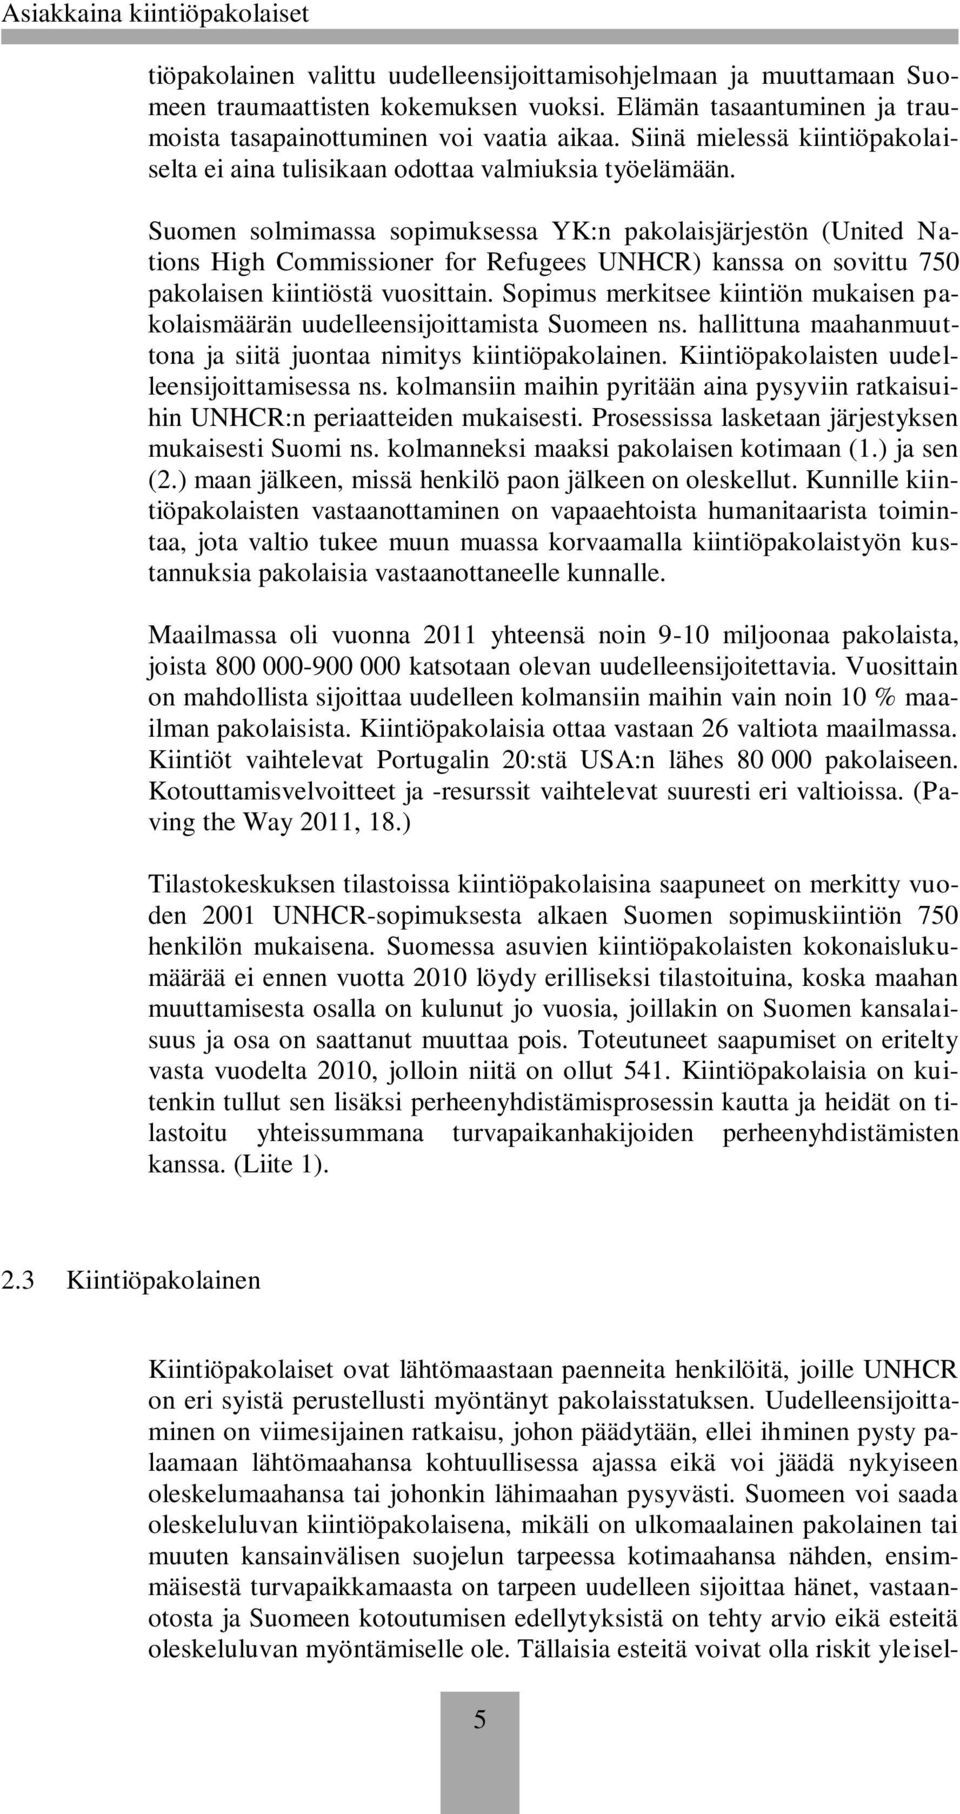 Suomen solmimassa sopimuksessa YK:n pakolaisjärjestön (United Nations High Commissioner for Refugees UNHCR) kanssa on sovittu 750 pakolaisen kiintiöstä vuosittain.